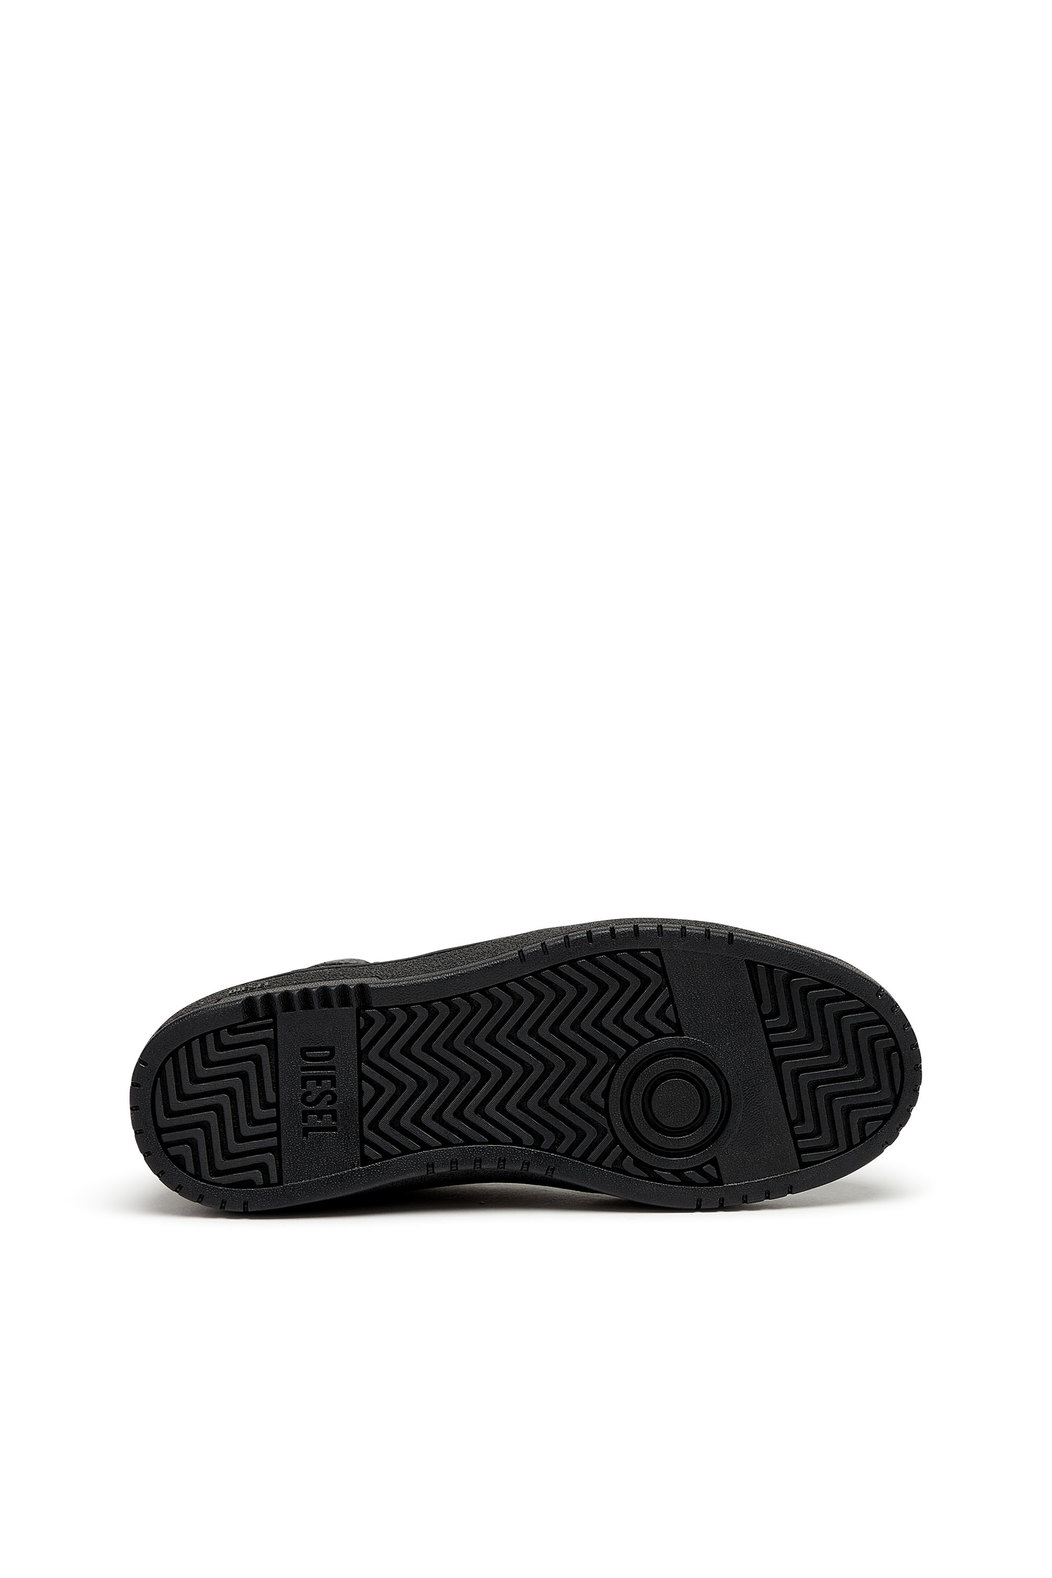 S-Ukiyo V2 Mid - High-top sneakers with D branding | Diesel